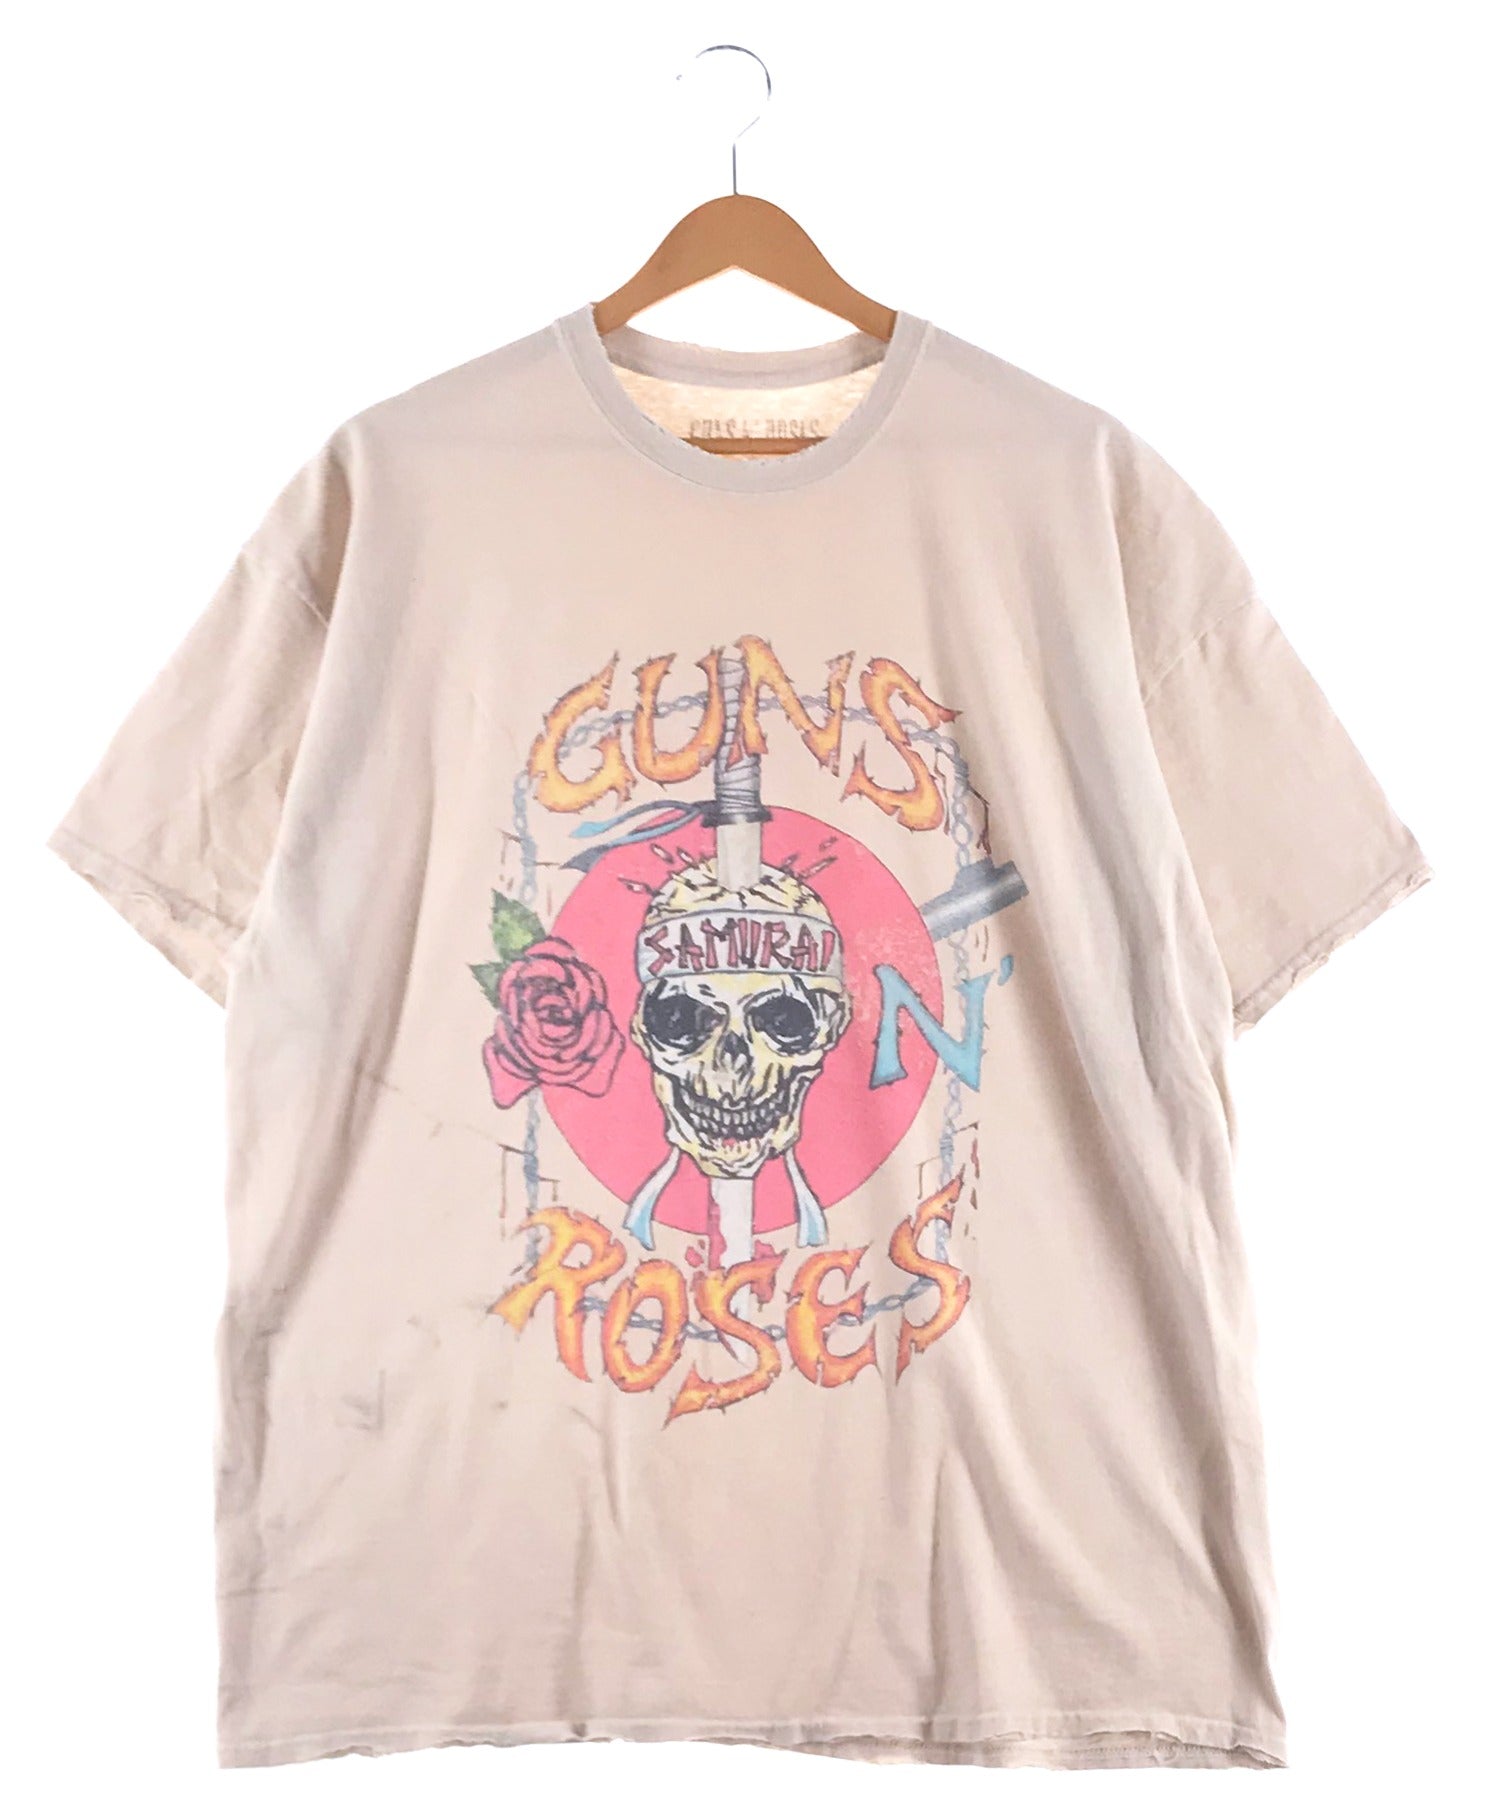 Guns N' Roses UROPEAN ツアーTシャツ XL 着丈75着丈約75cm